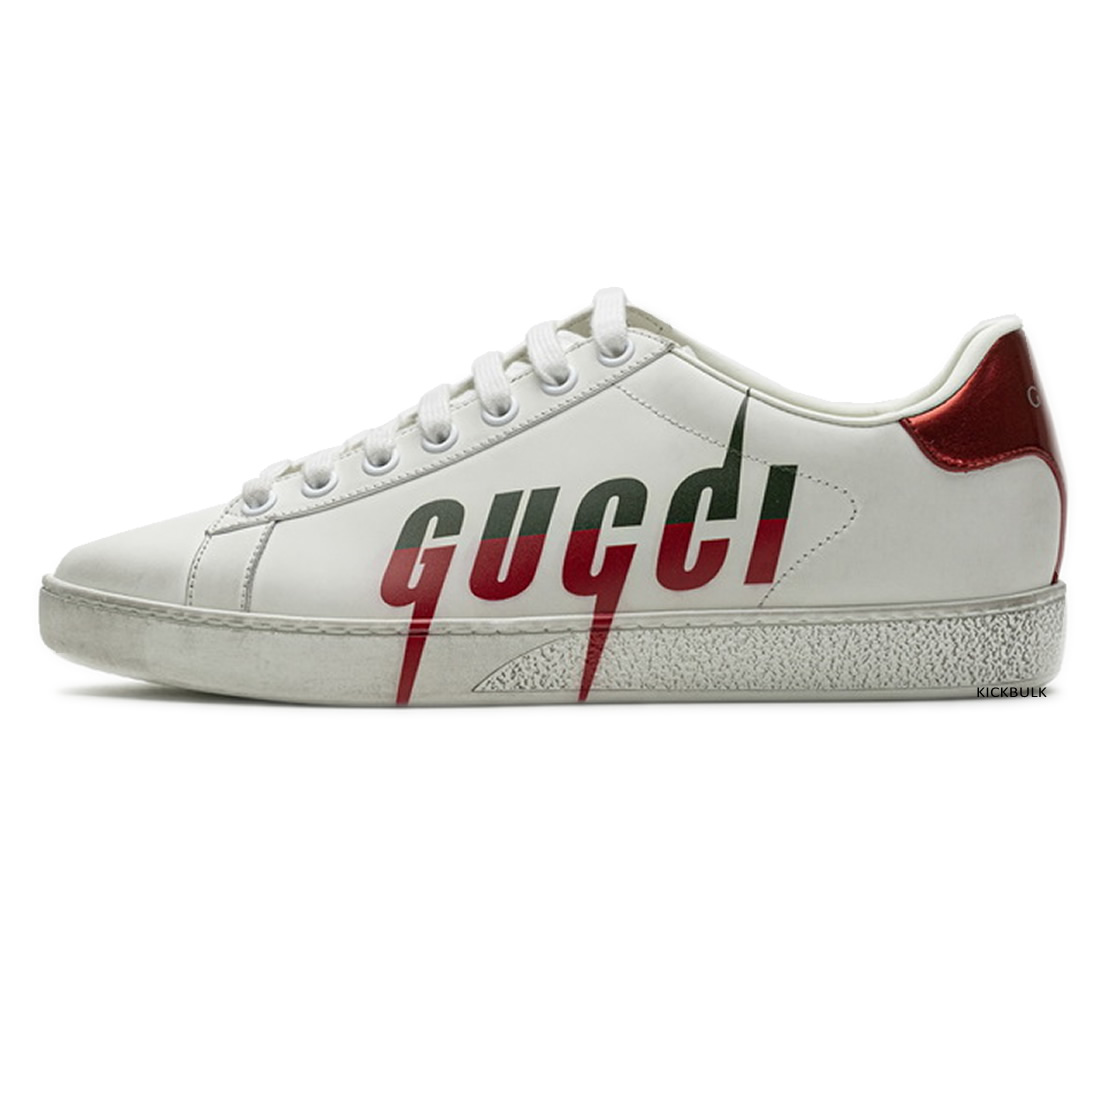 Gucci Lightning Sneakers 429446a39gq9085 1 - www.kickbulk.cc